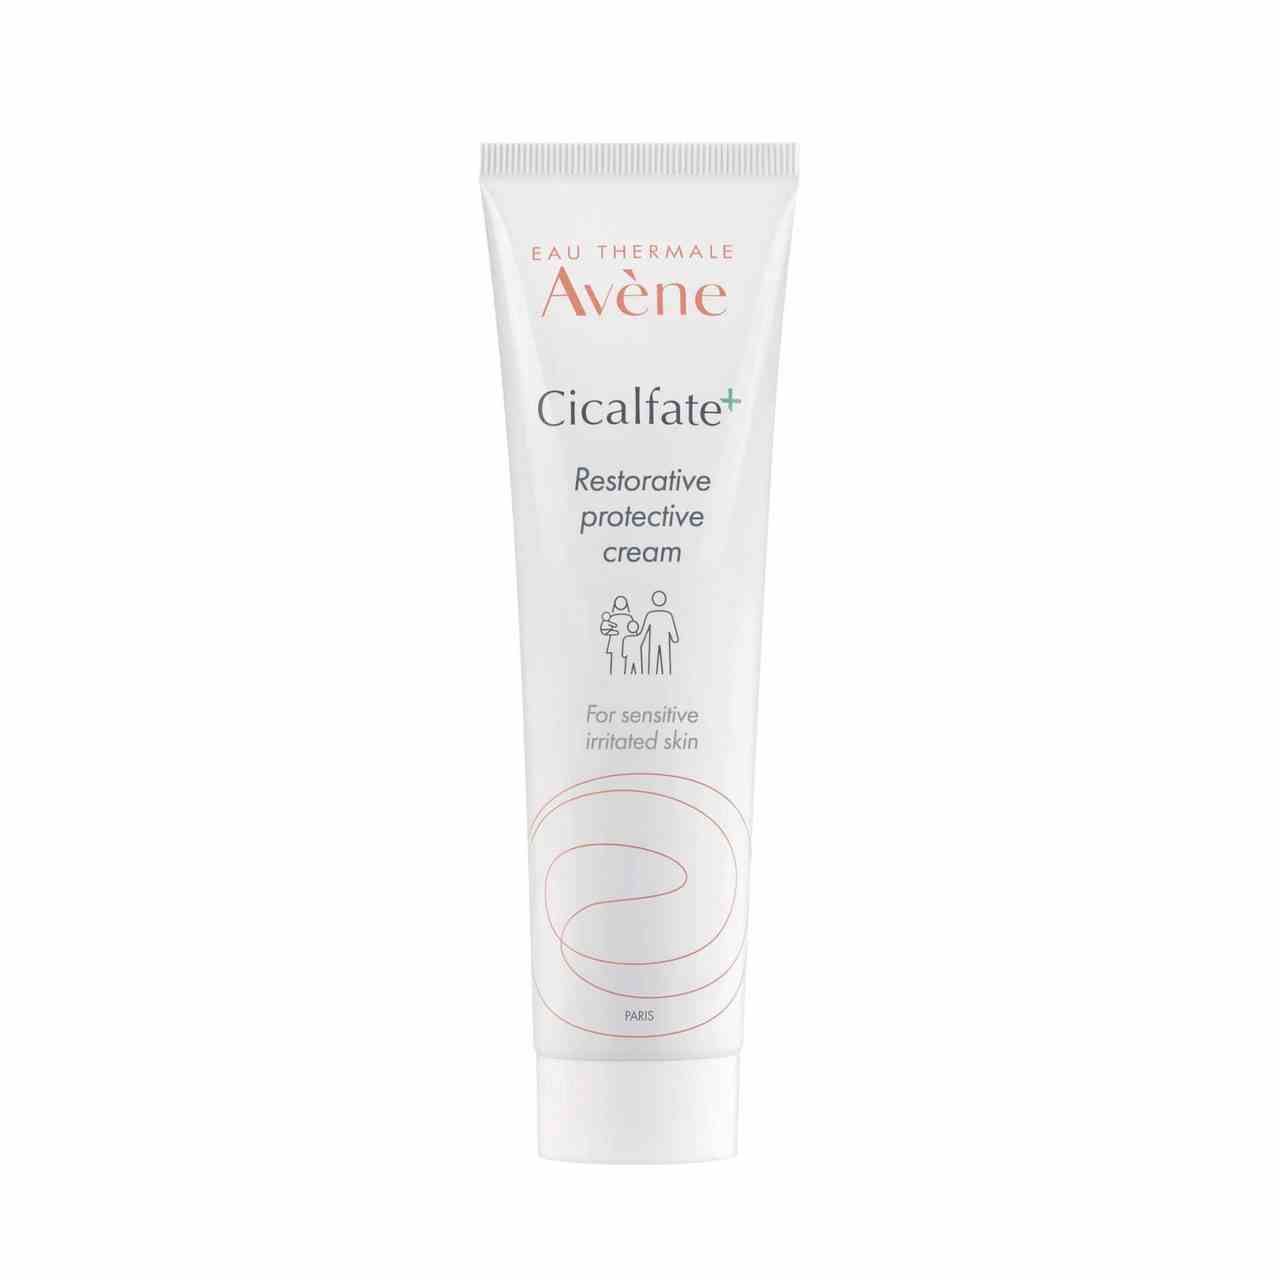 Eau Thermale Avène Cicalfate+ Restorative Protective Cream, weiße Tube auf weißem Hintergrund